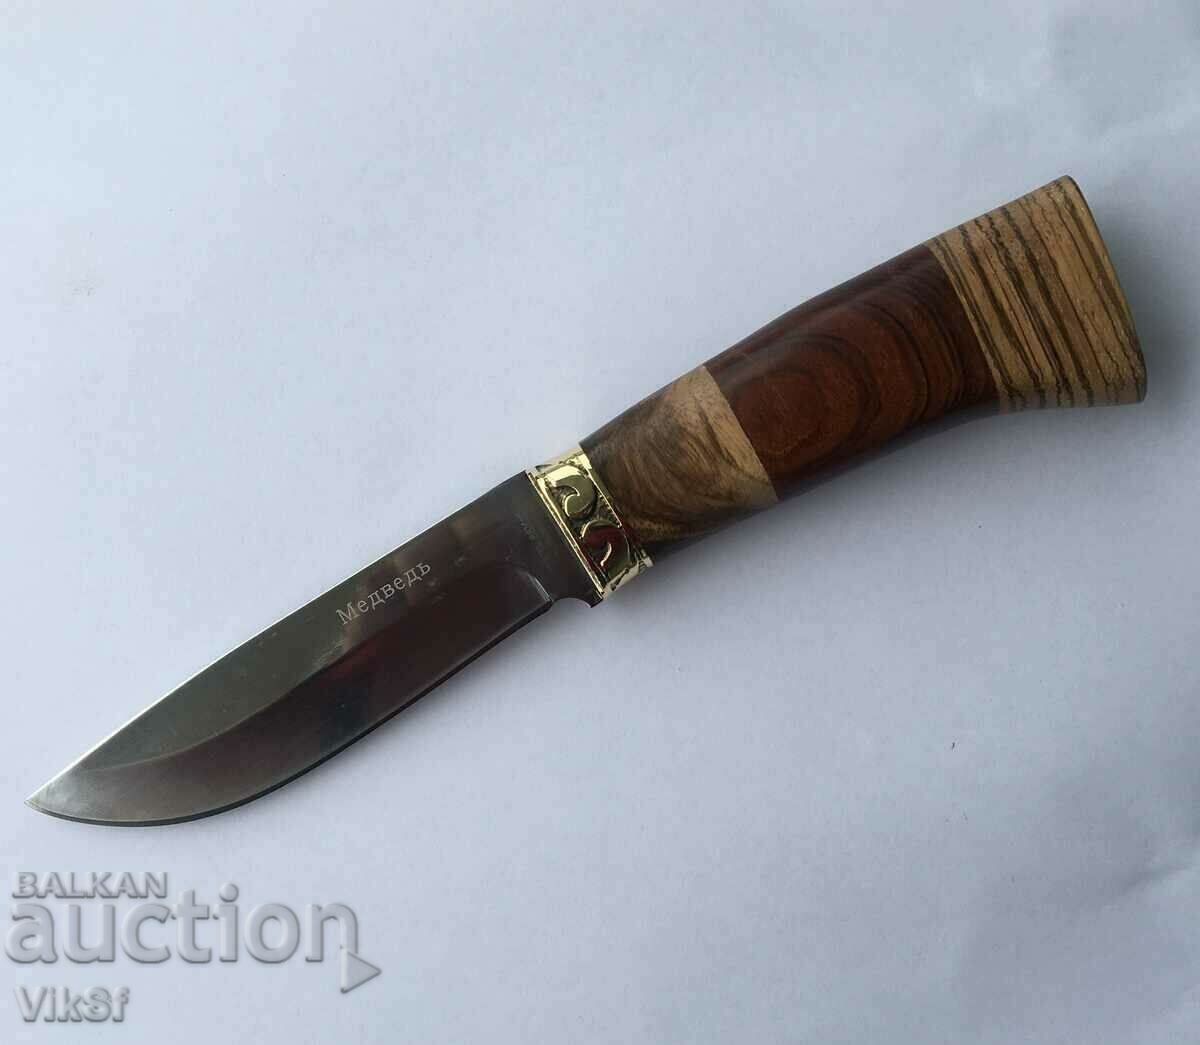 Ρωσικό κυνηγετικό μαχαίρι "BEAR" 110Χ220 ΜΜ